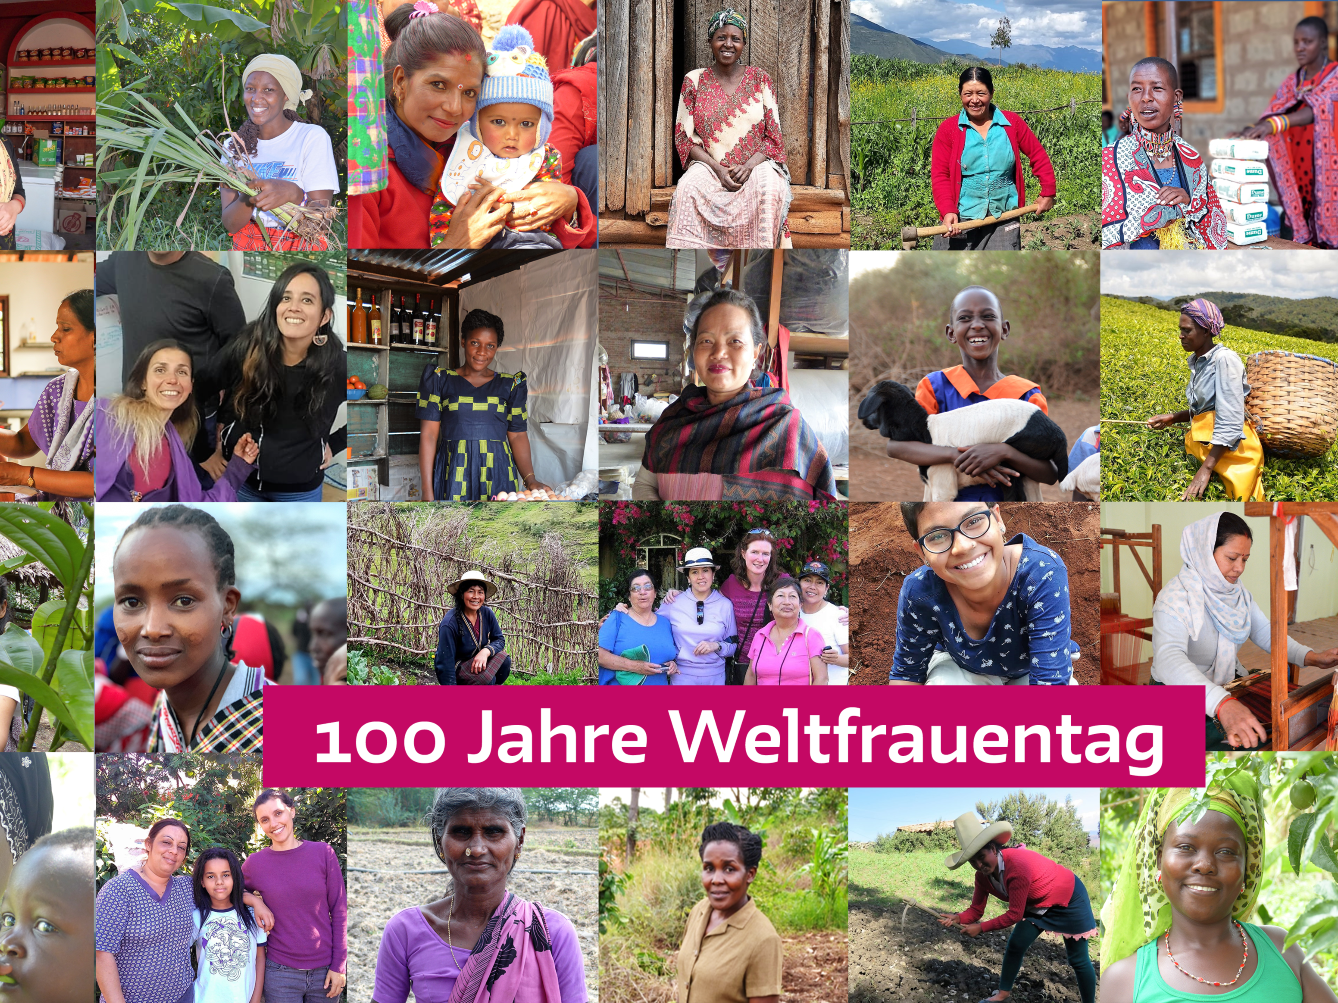 100 Jahre Weltfrauentag – 100 Jahre täglich Überleben sichern